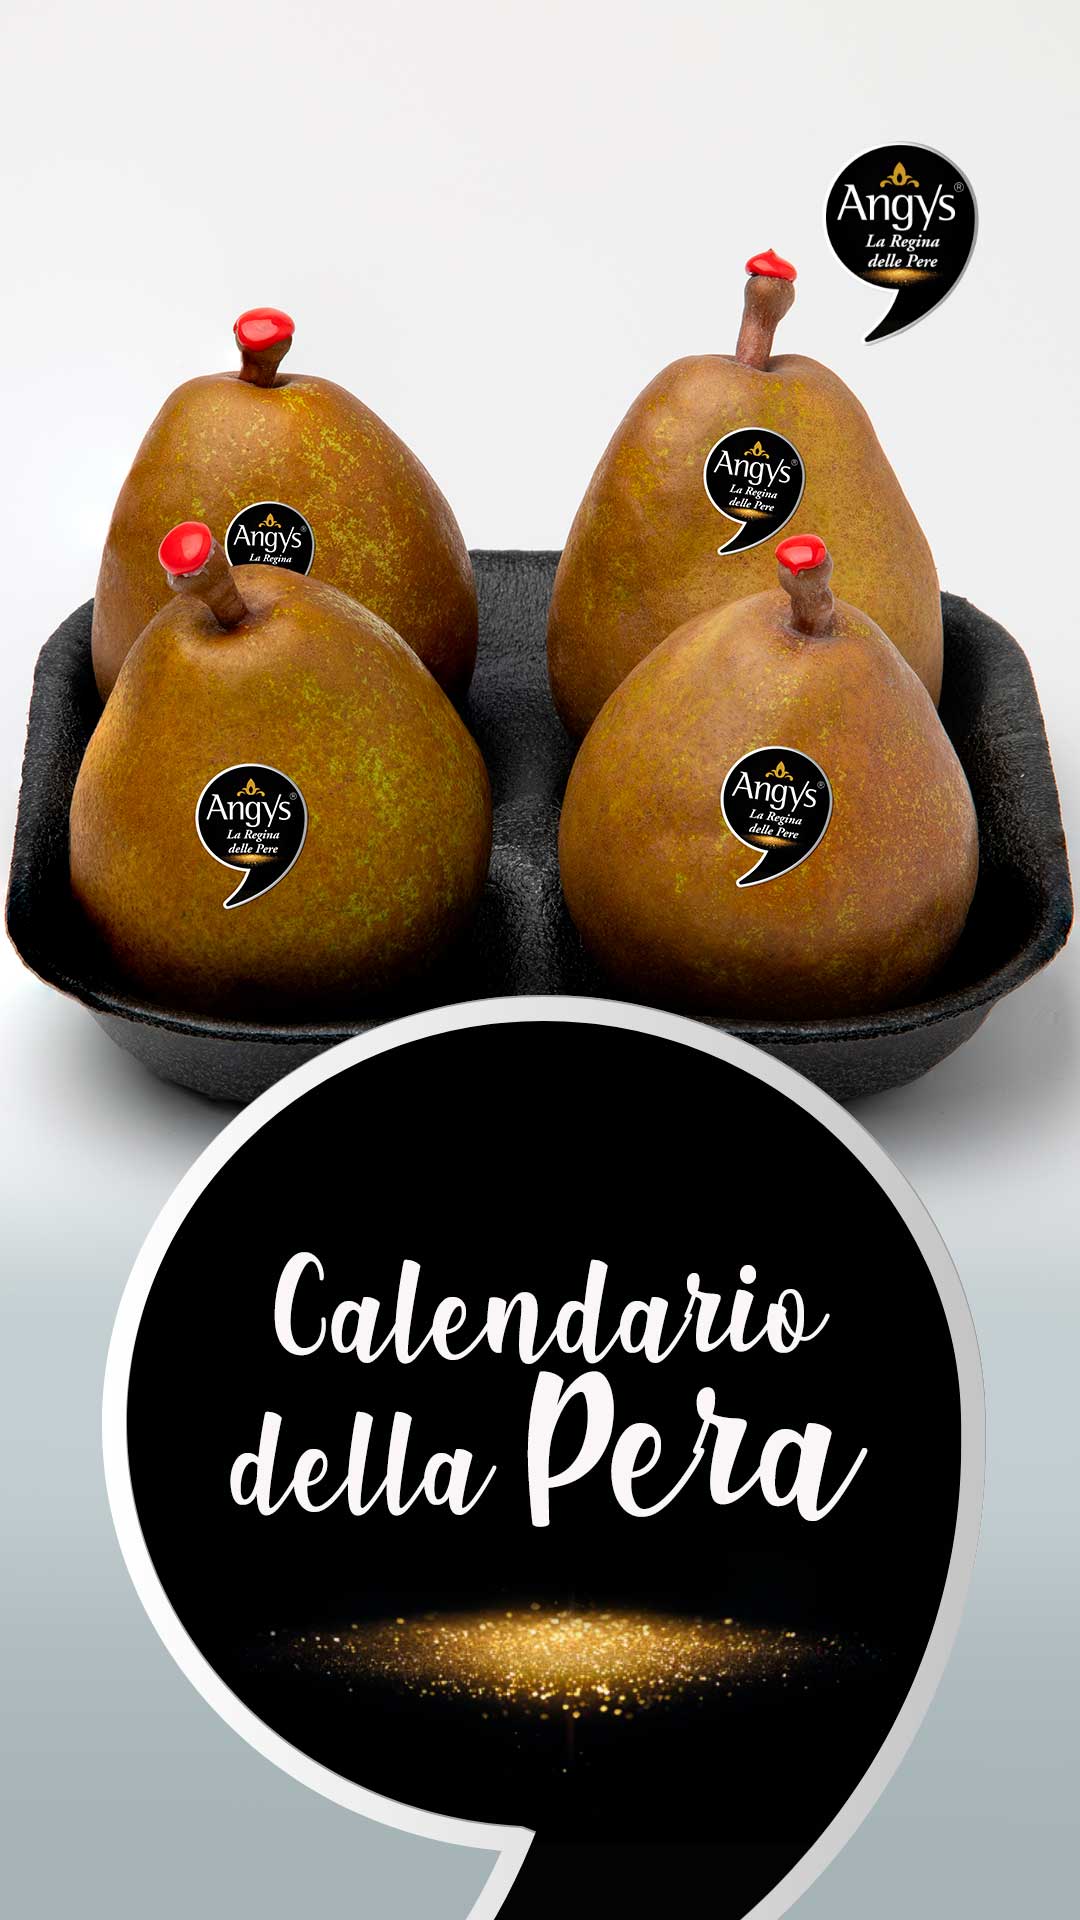 ANGYS - Calendario della pera: mese che arriva, varietà che trovi!